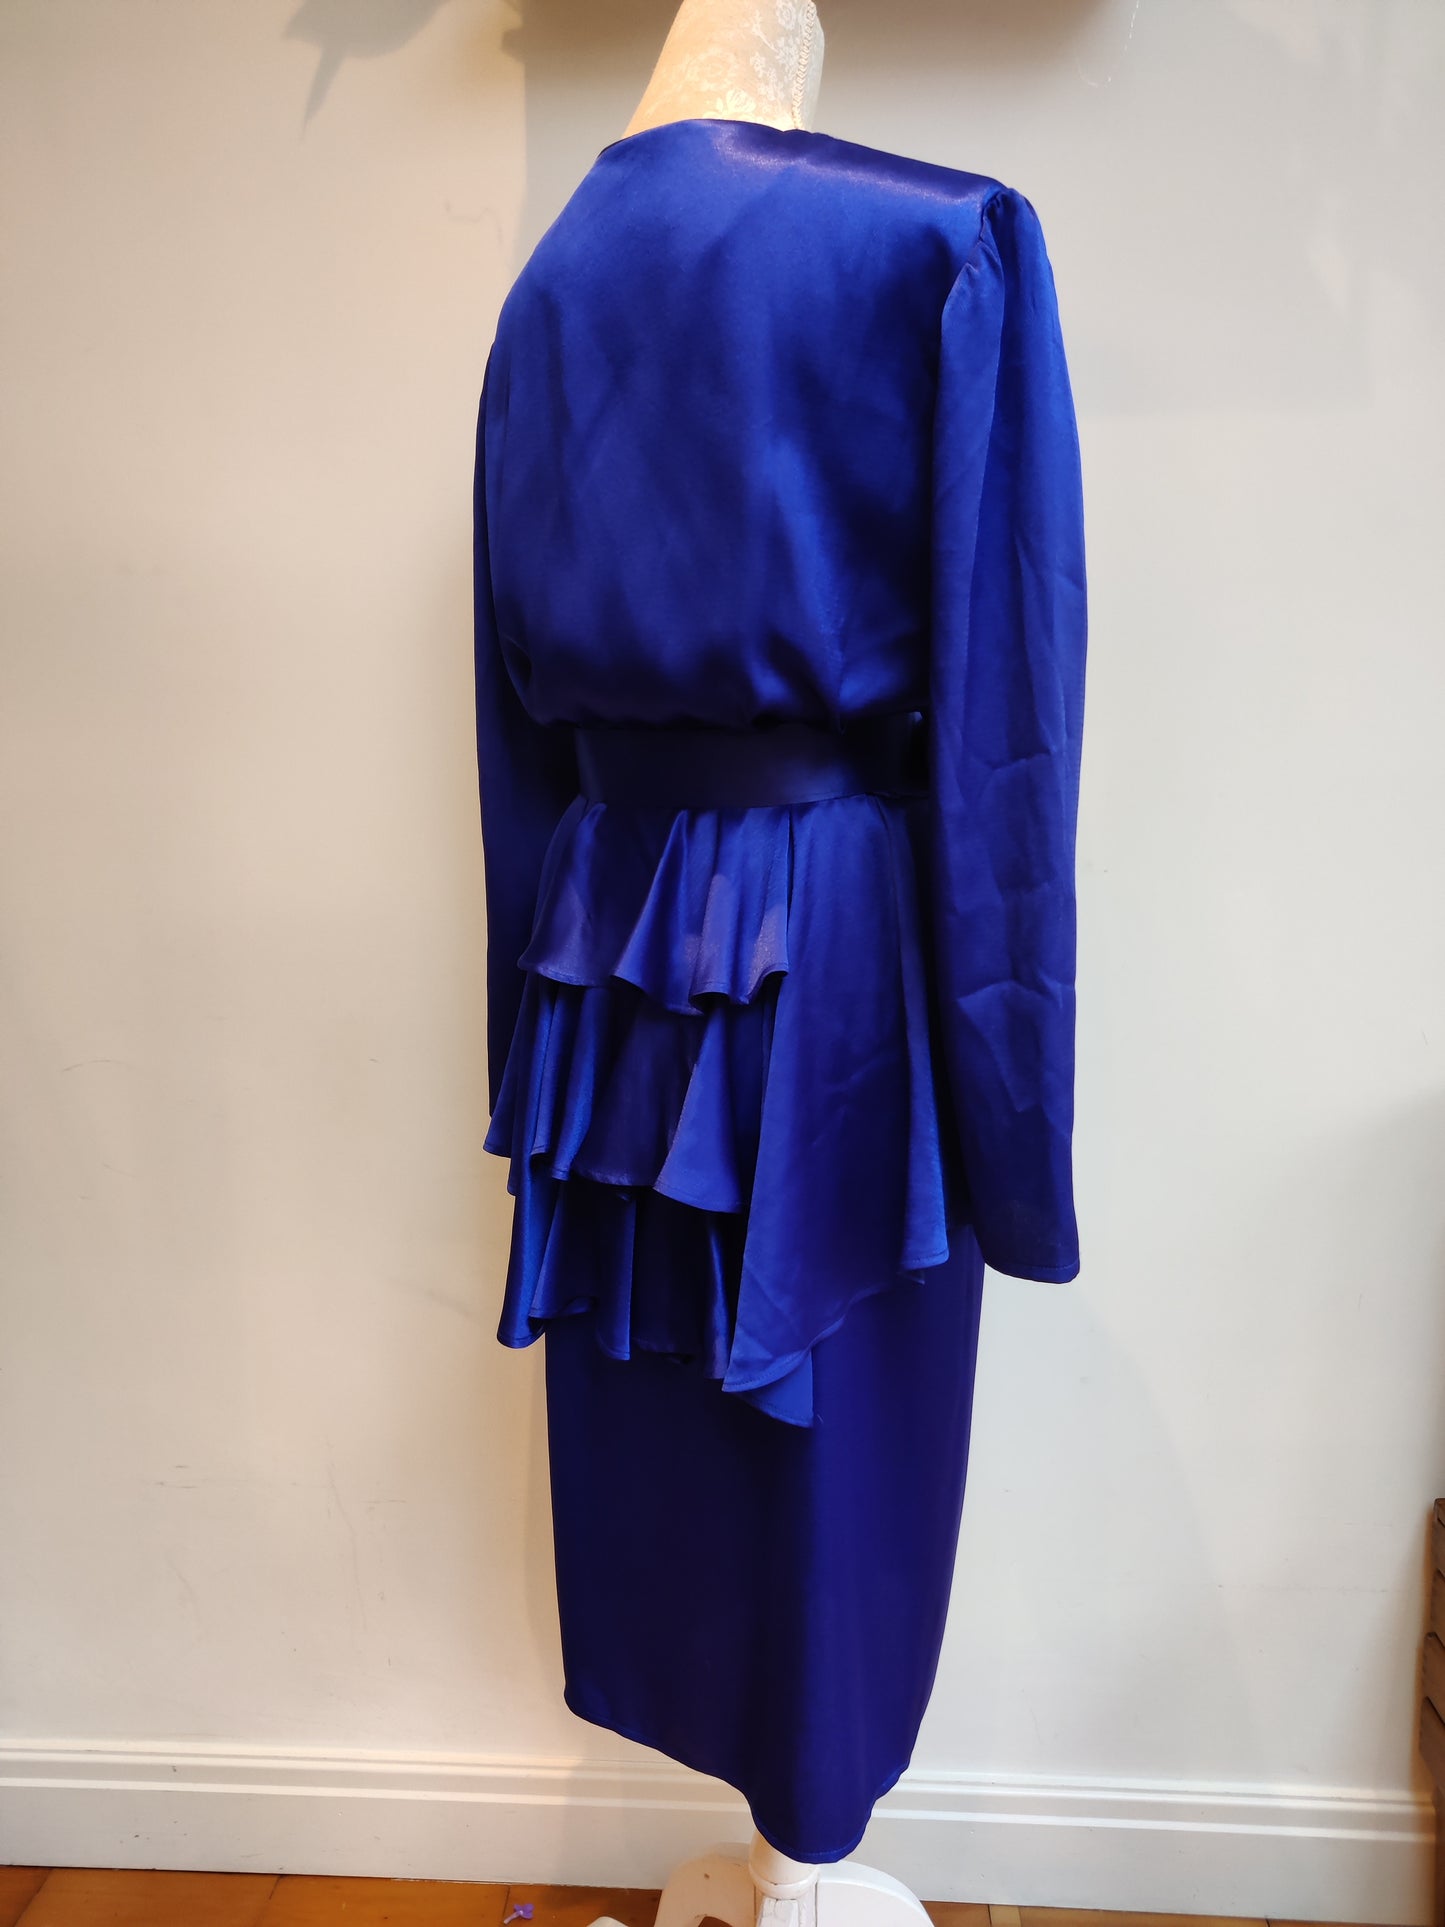 80s blue evening dress with belt.